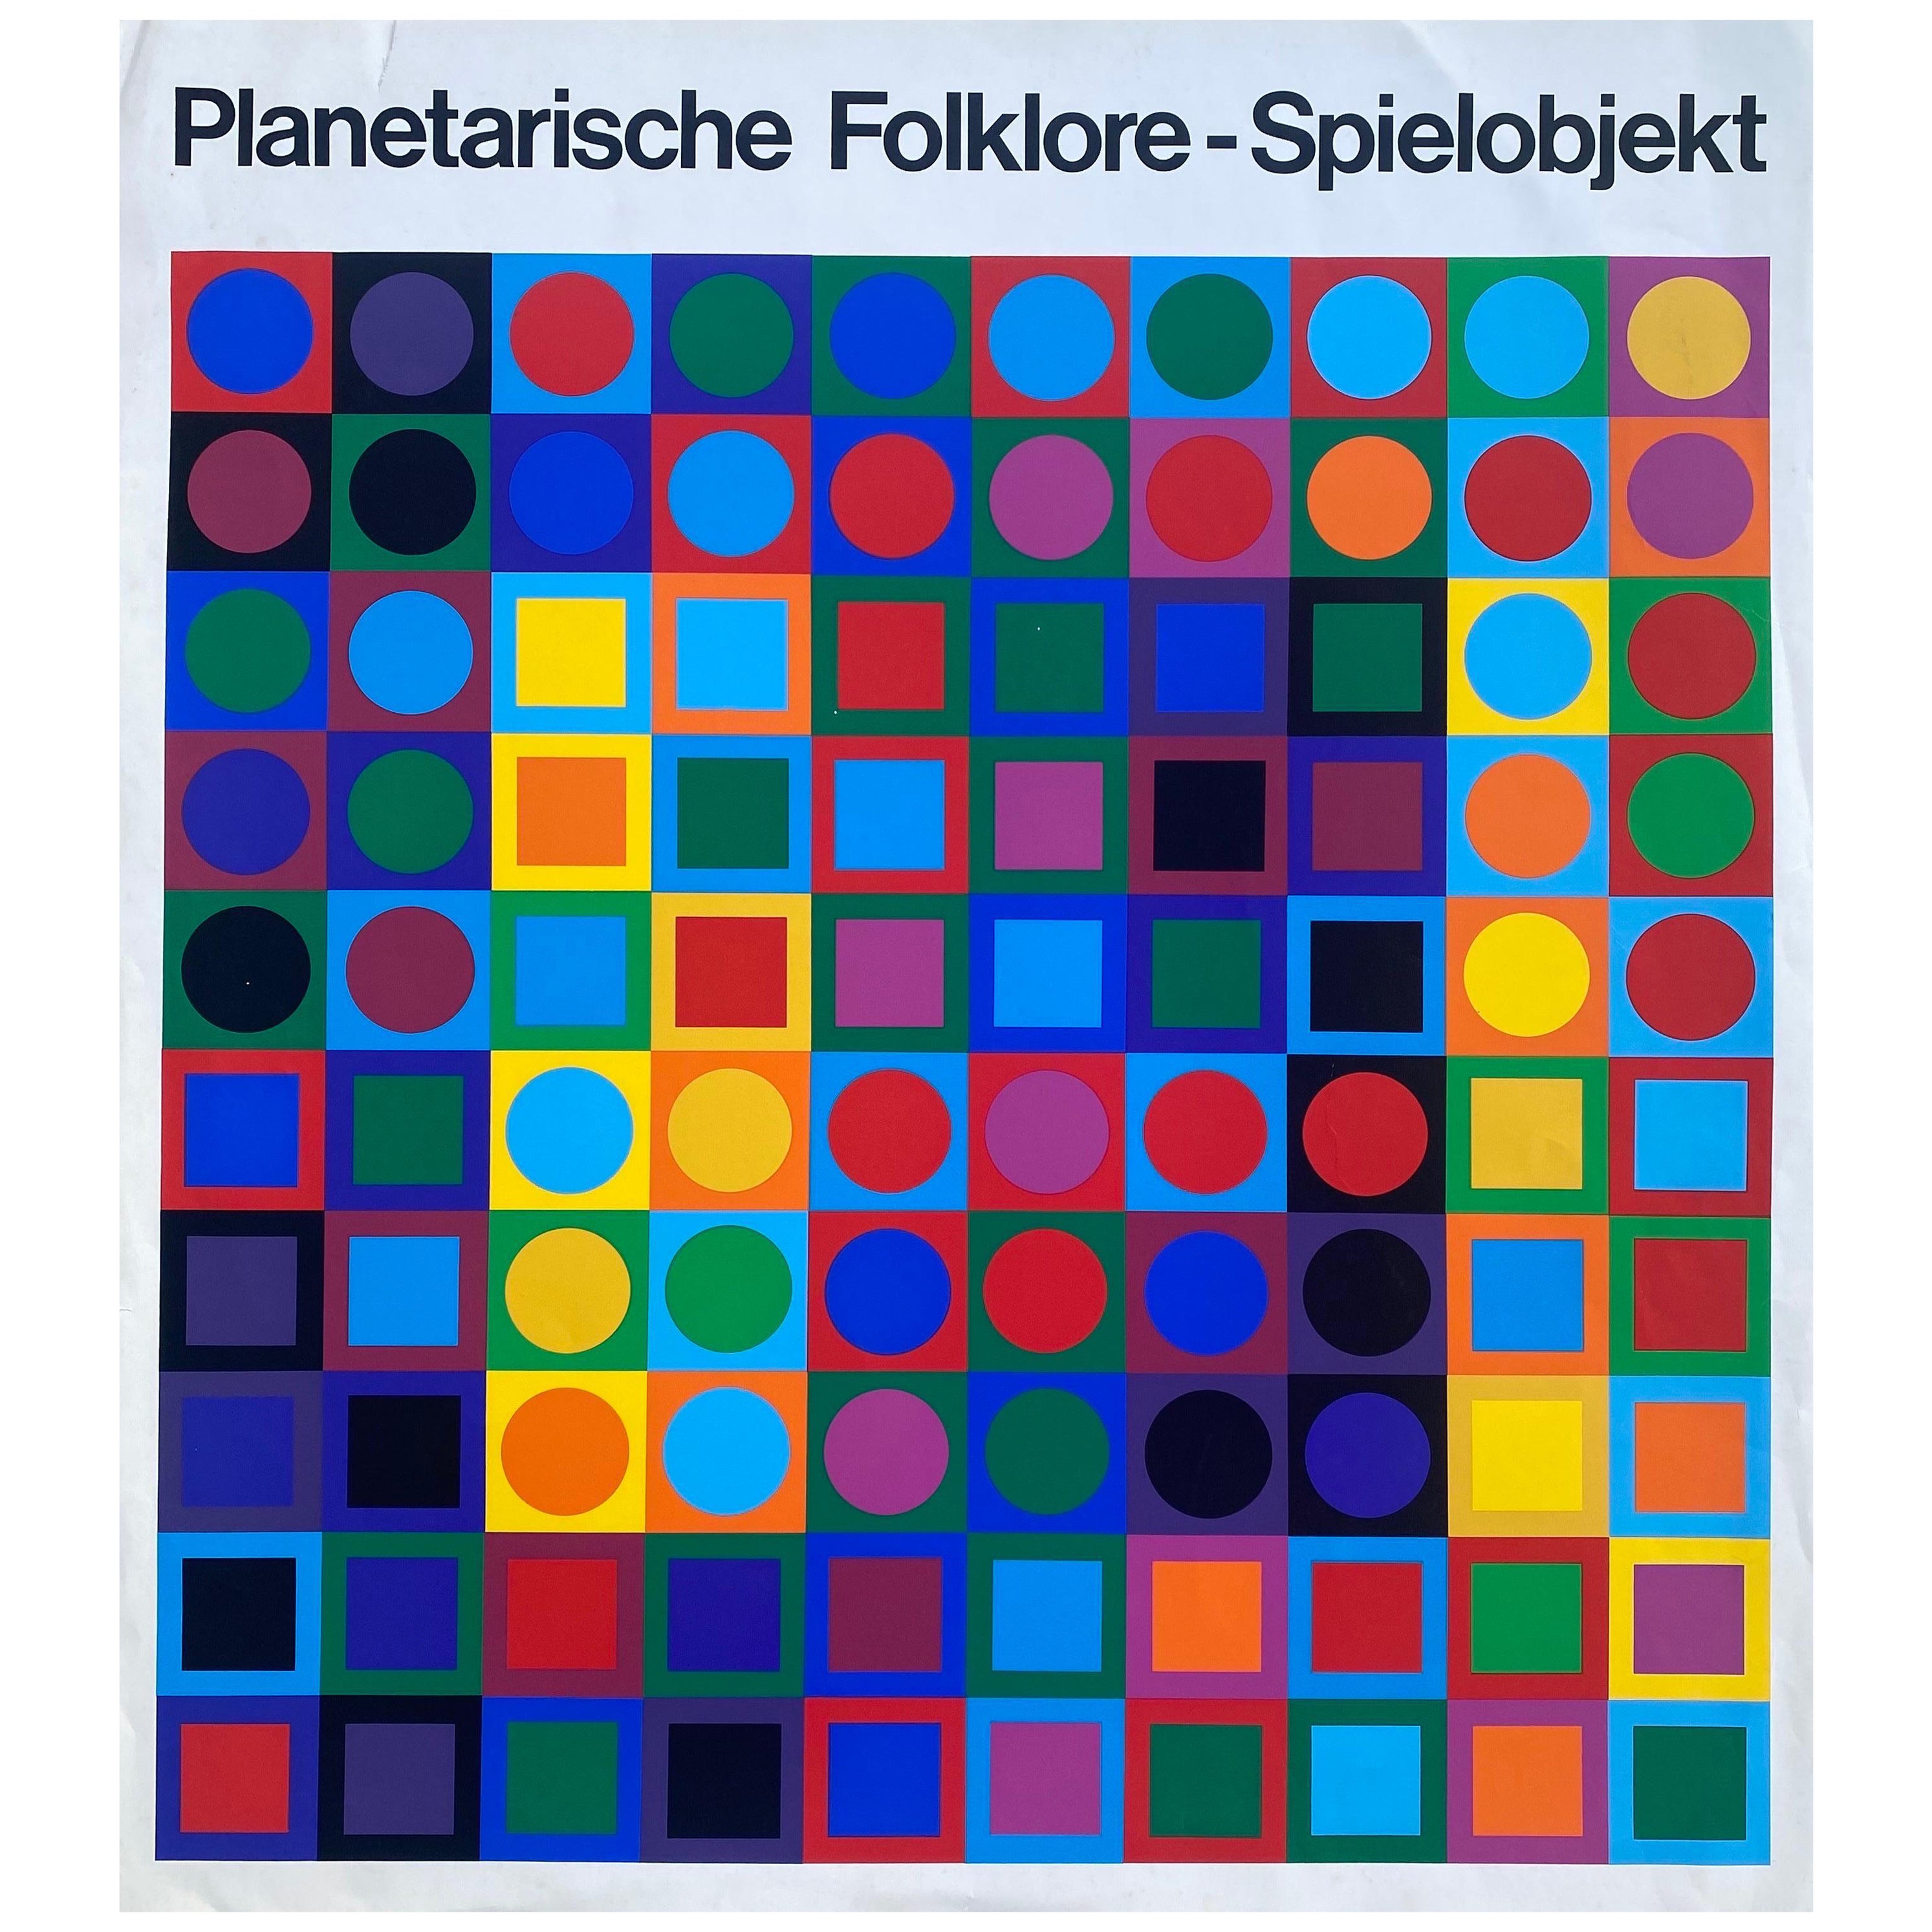 Vers 1969 "Planetarische Folklore - Spielobjekt" d'après Victor Vasarely 